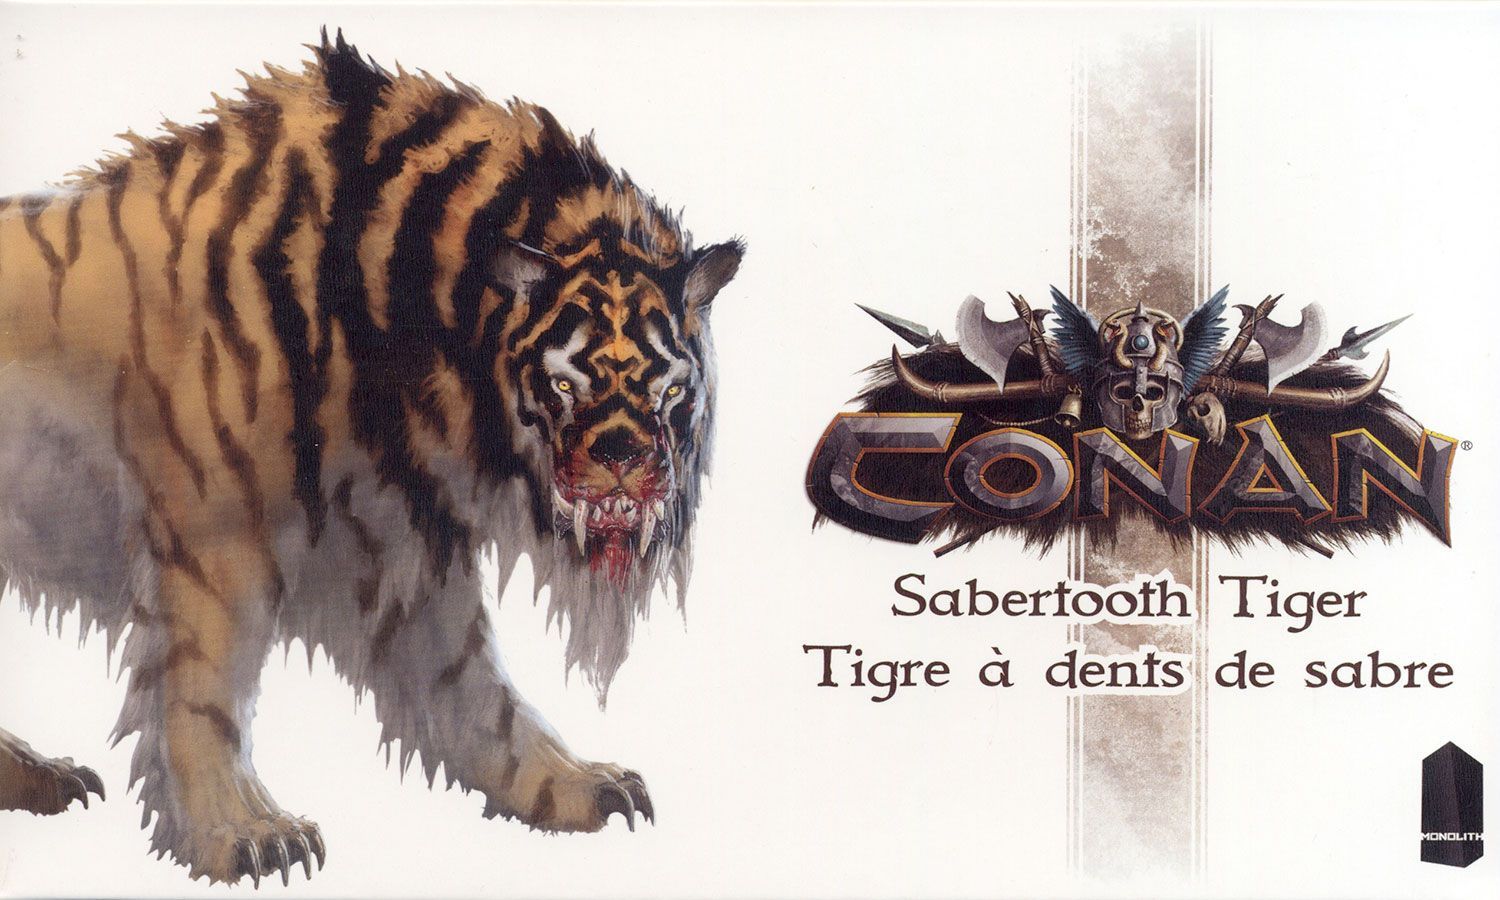 Conan: Sabertooth Tiger